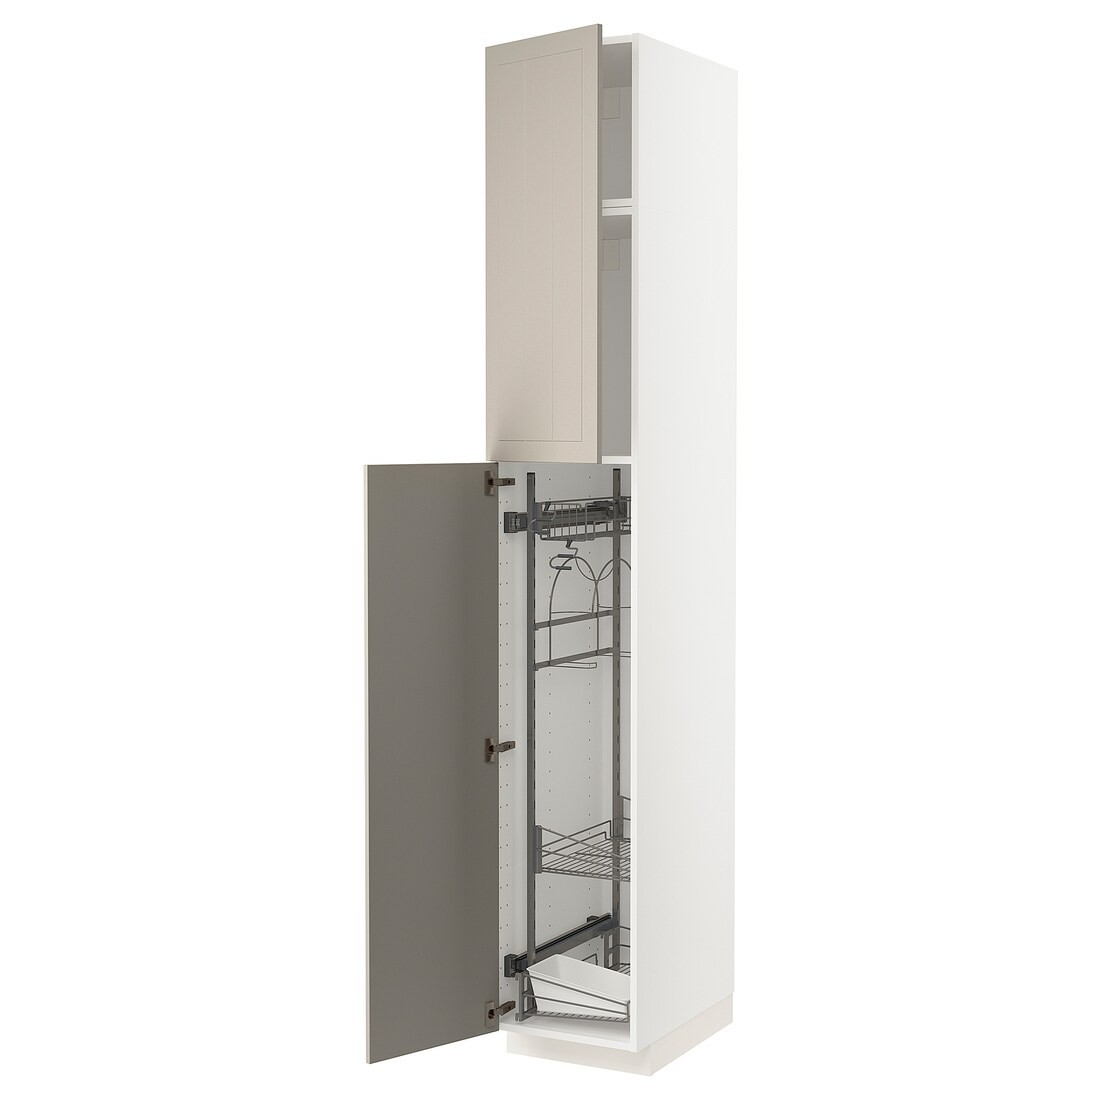 IKEA METOD МЕТОД Высокий шкаф с отделением для аксессуаров для уборки, белый / Stensund бежевый, 40x60x240 см 99456010 | 994.560.10